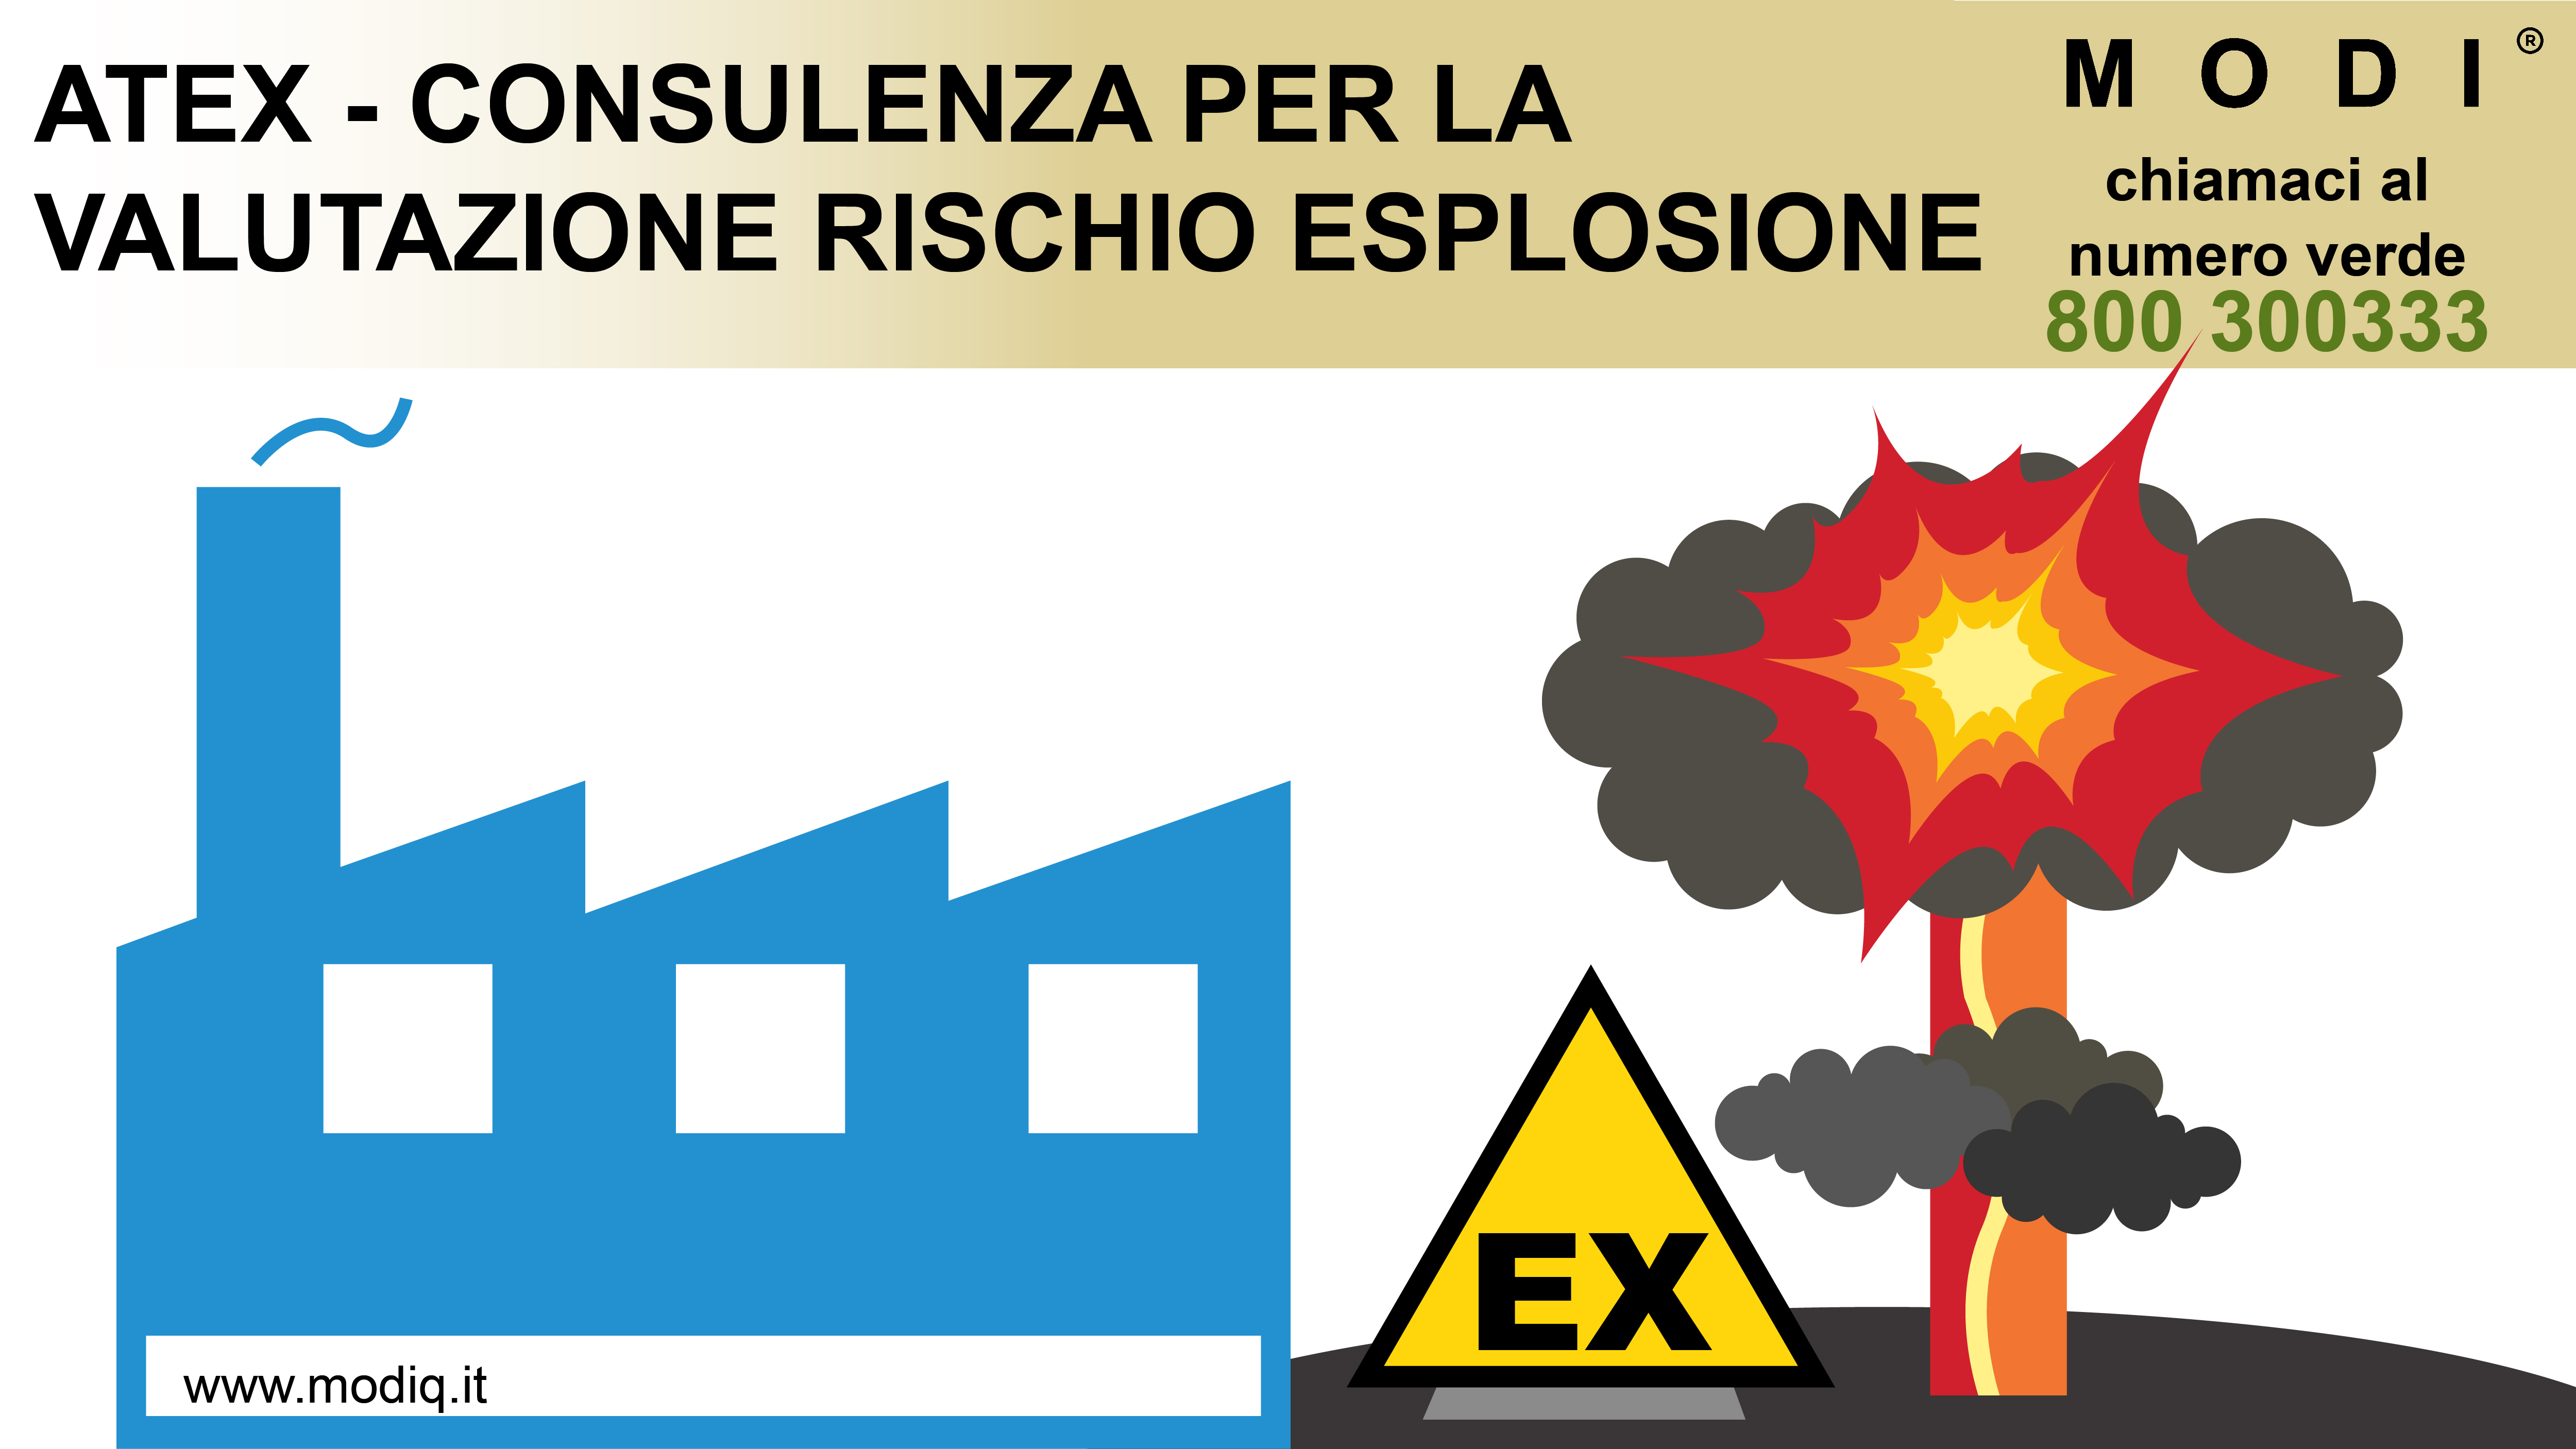 rischio esplosione in ambienti con atmosfere esplosive